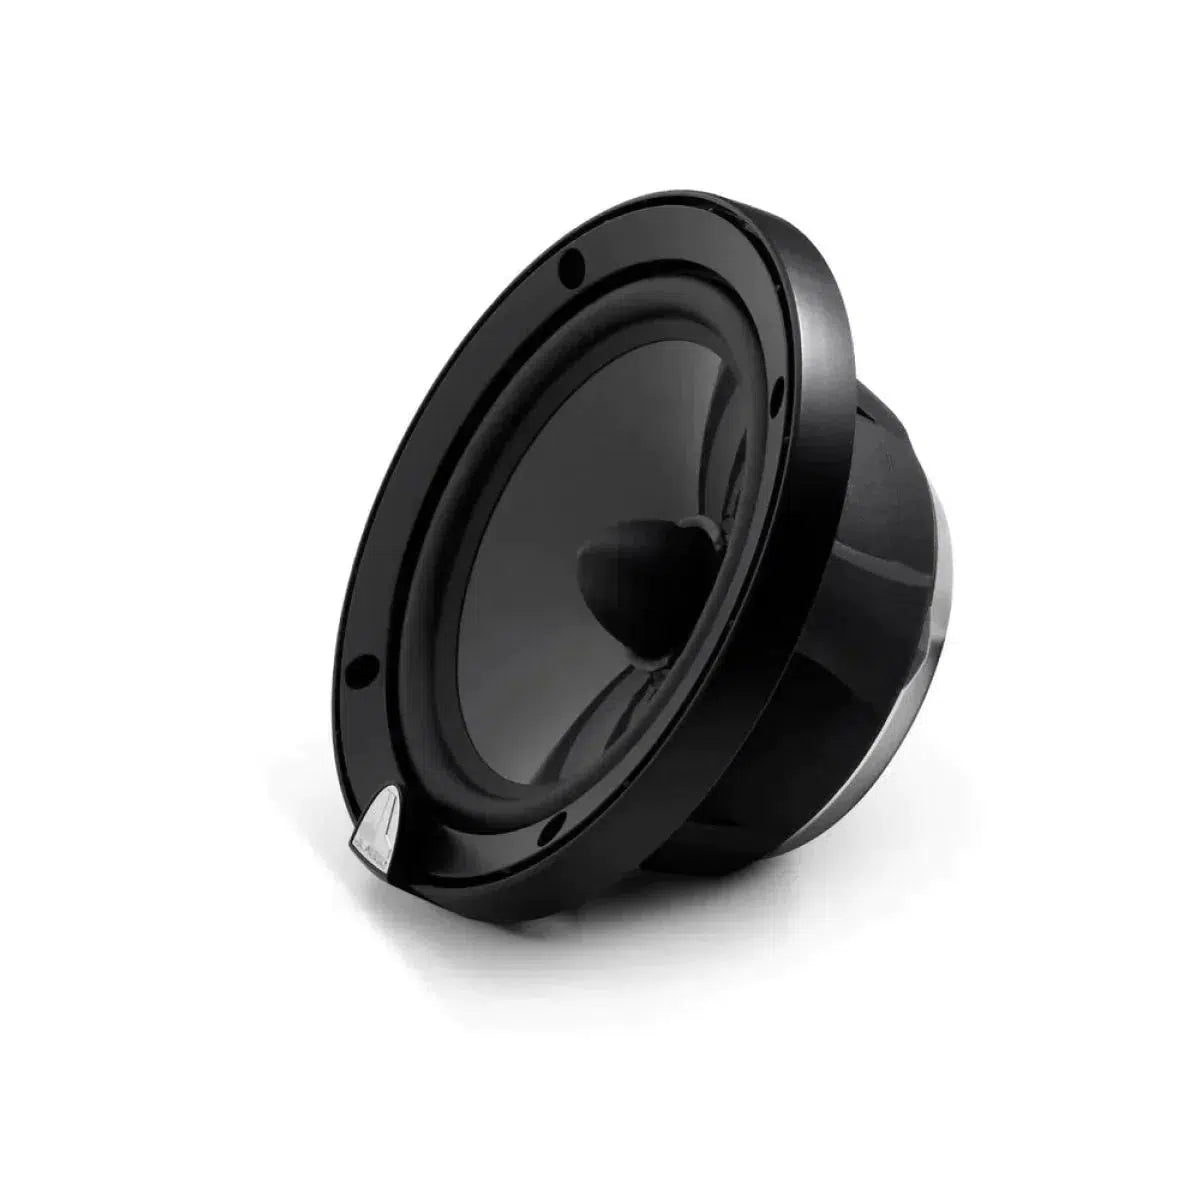 JL Audio-C3-600-6.5" (16,5cm) Speaker Set-Masori.de